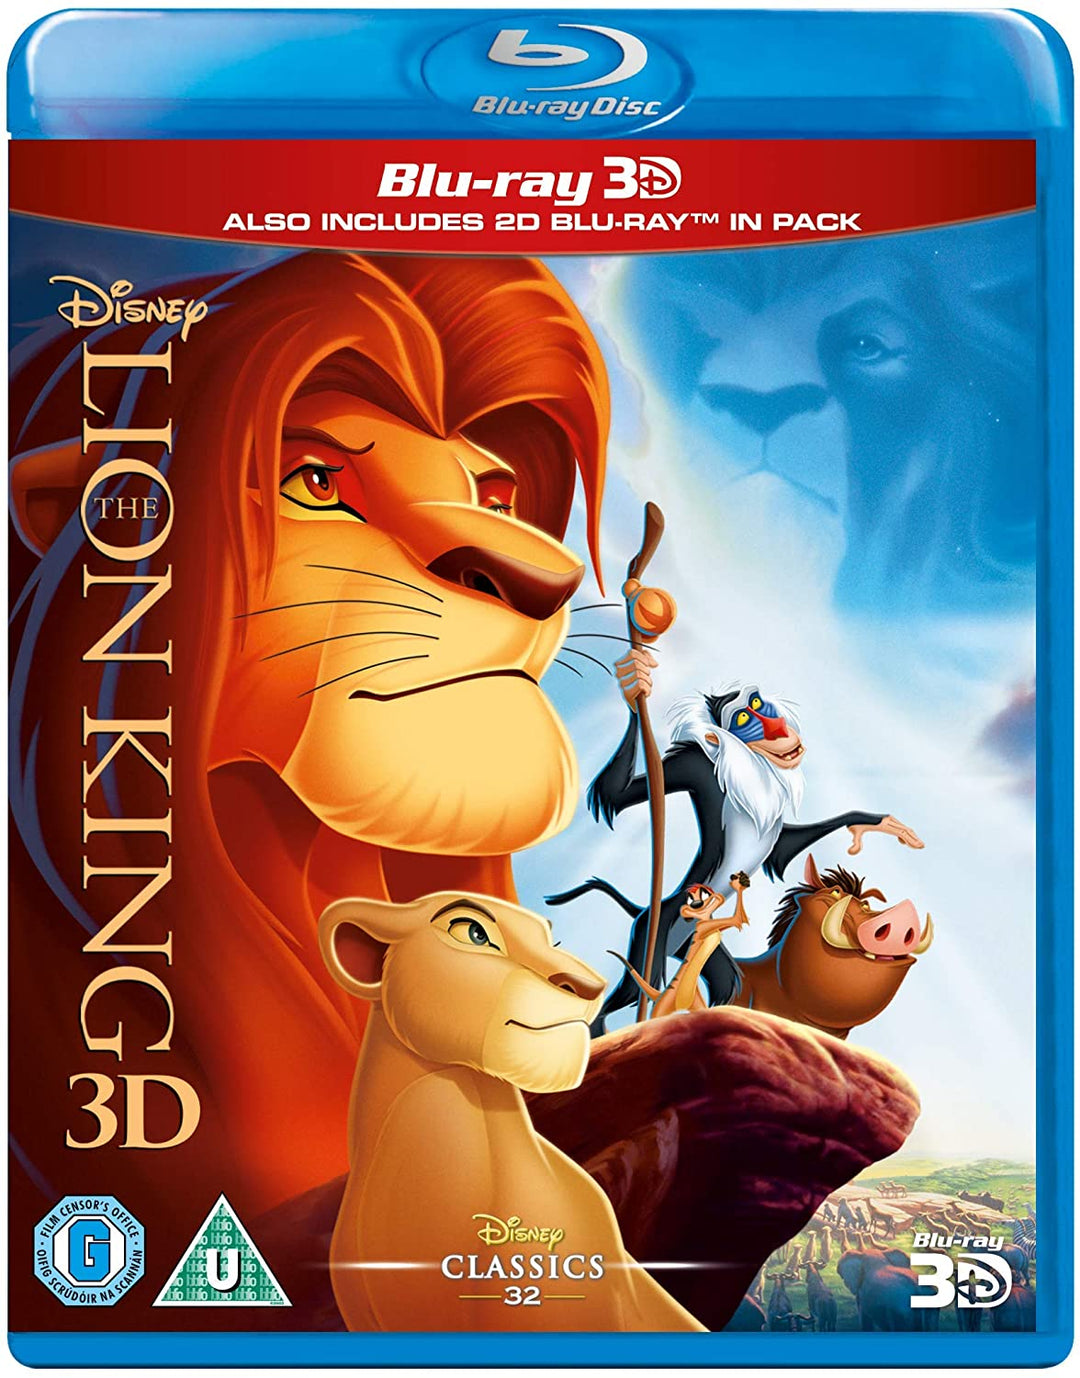 Le Roi Lion (Blu-ray 3D) [Région gratuite]